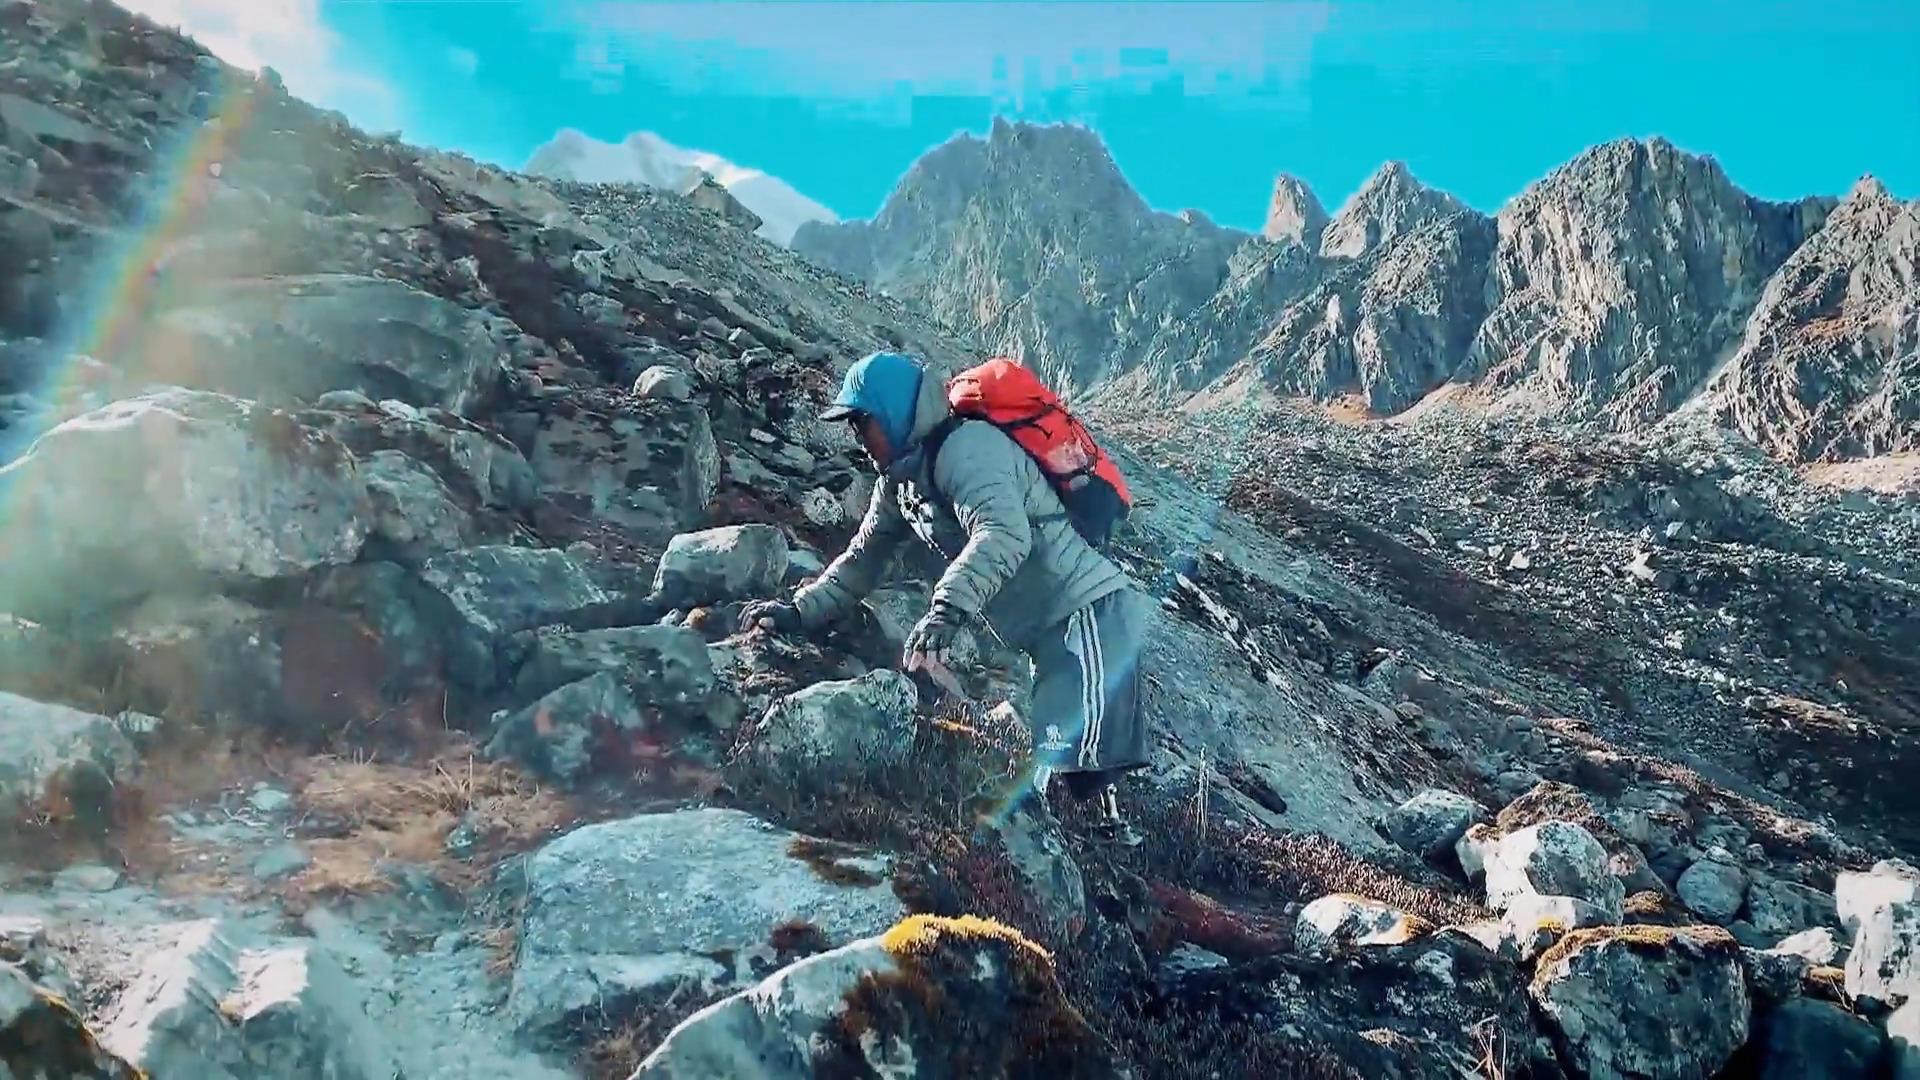 Hari schafft den Mount Everest trotz Bein-Amputation Held ohne Beine